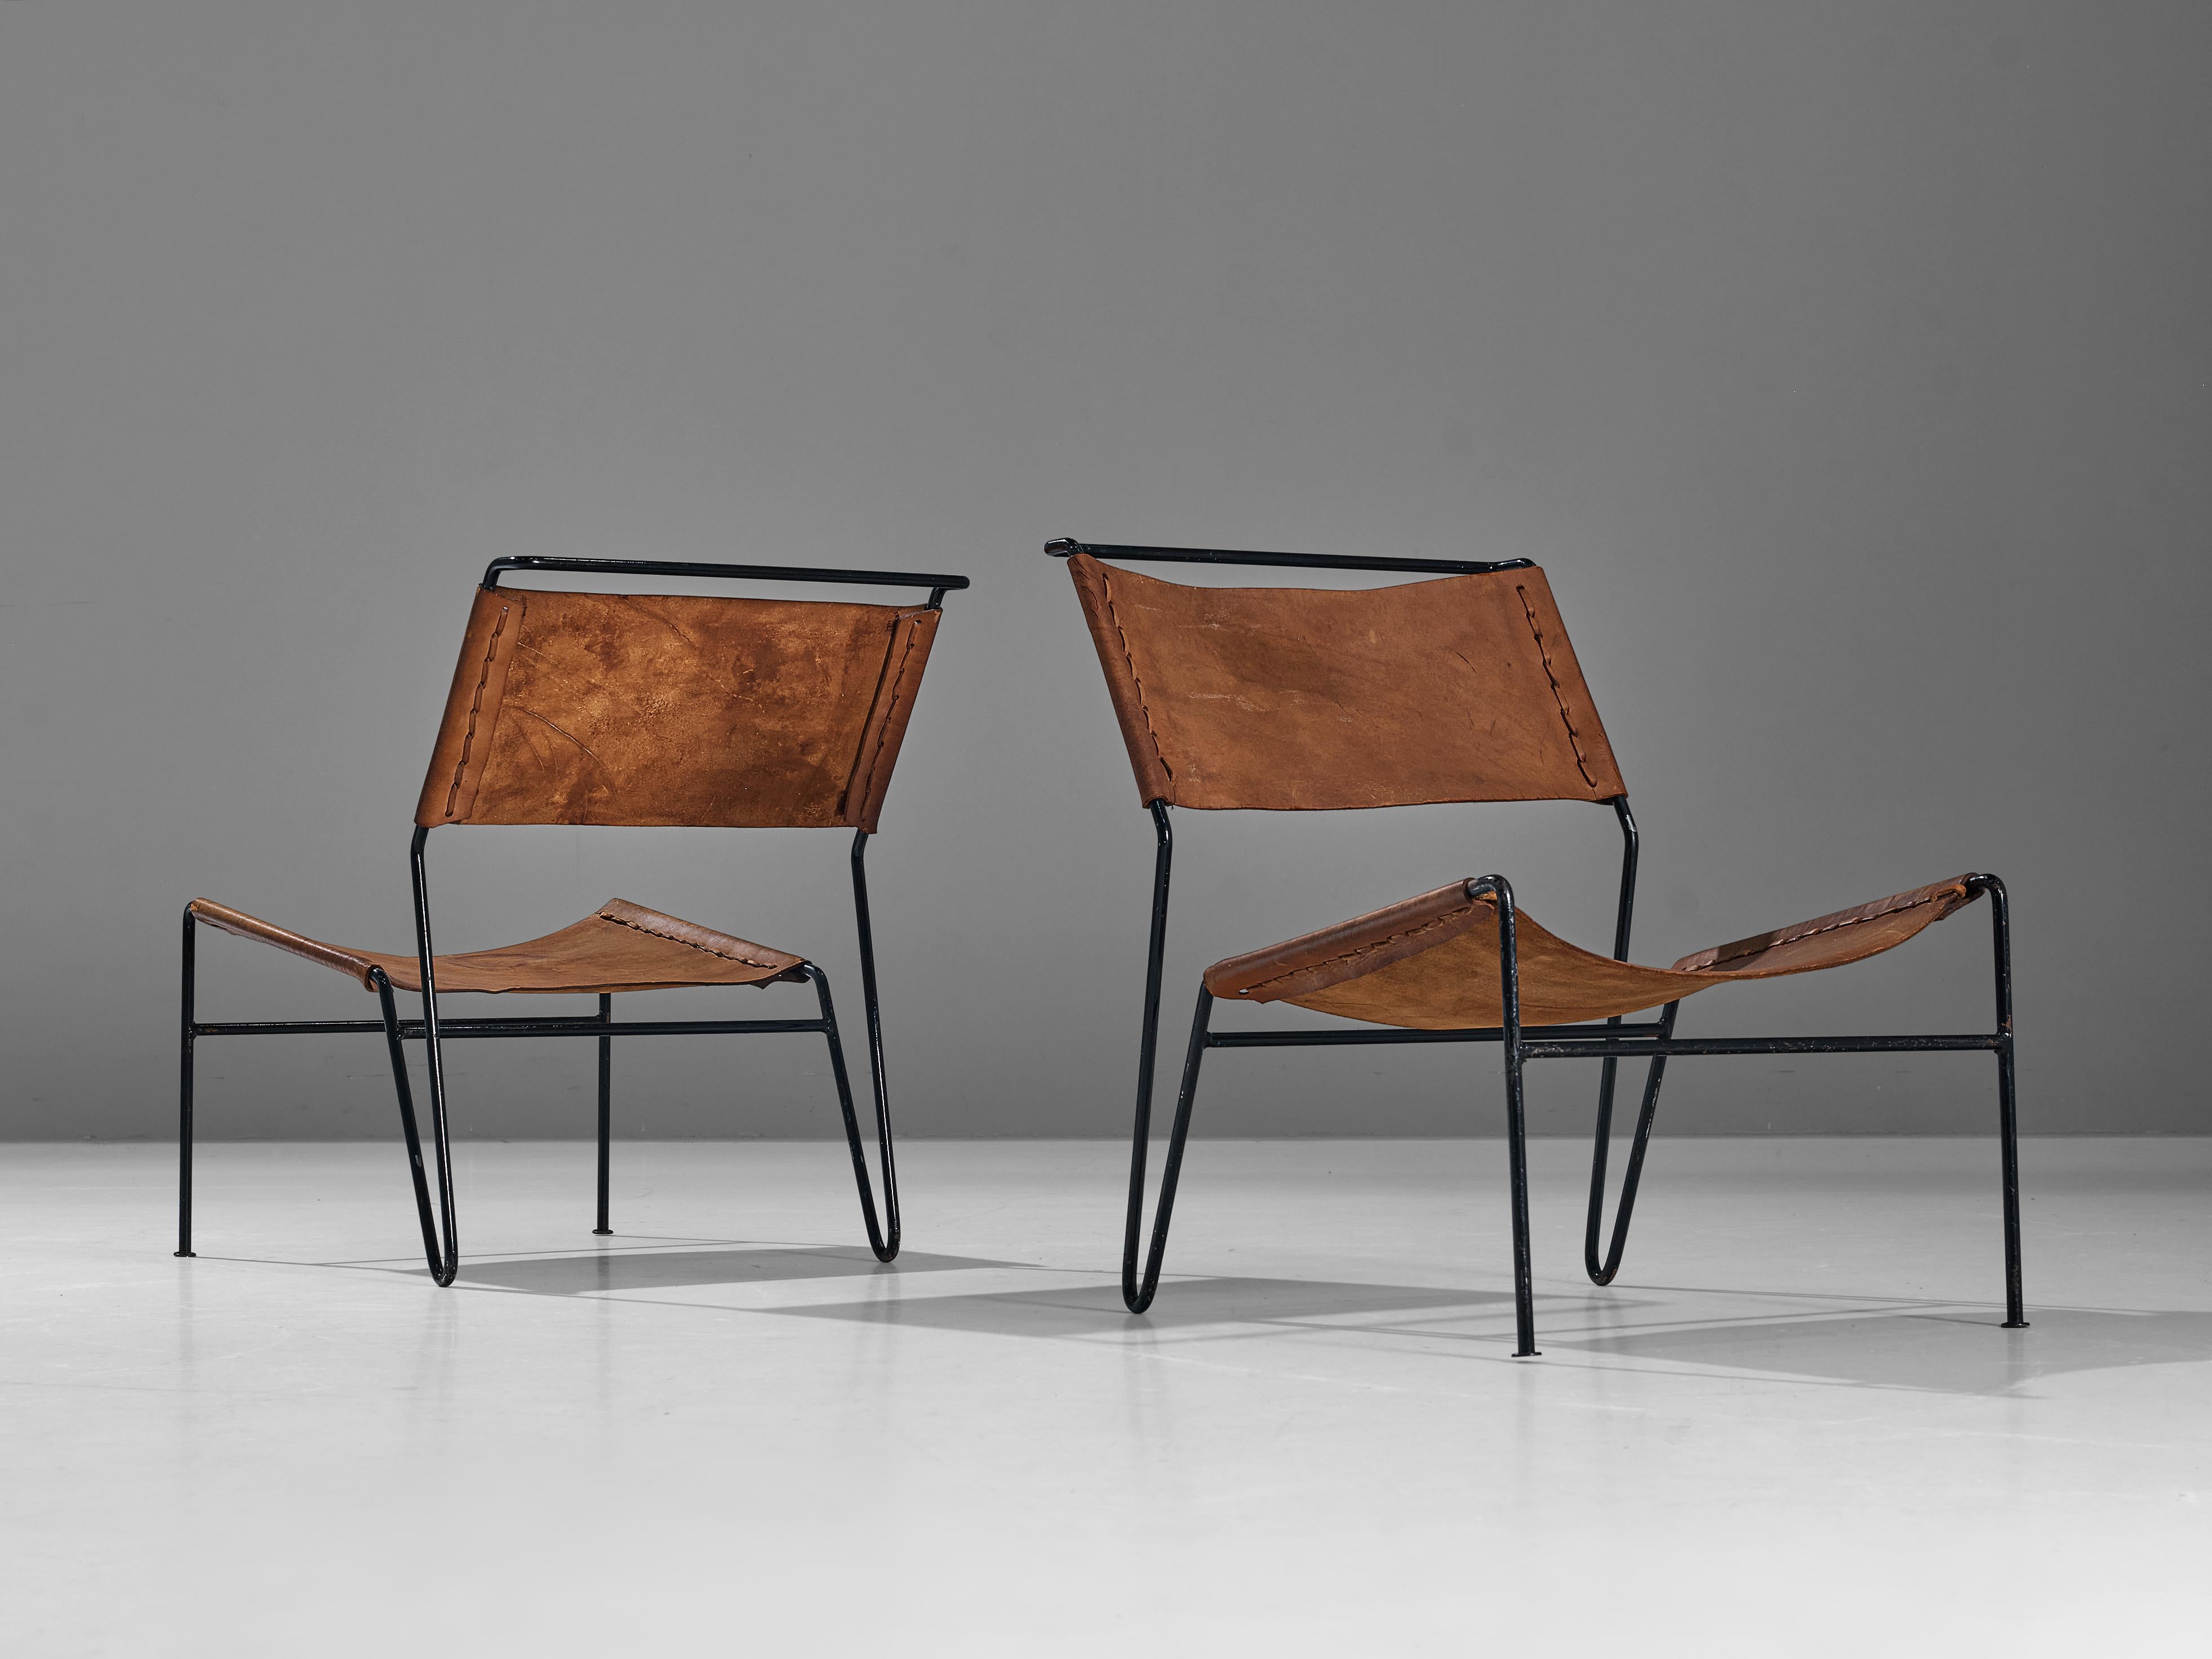 A. Dolleman für Metz & Co, Paar Sessel, Sattelleder, Metallrohr, Niederlande, 1950er Jahre

Ein Paar modernistische Sessel, entworfen von dem niederländischen Designer A. Dolleman für Metz & Co. Die Stühle haben ein sehr einzigartiges, ansprechendes